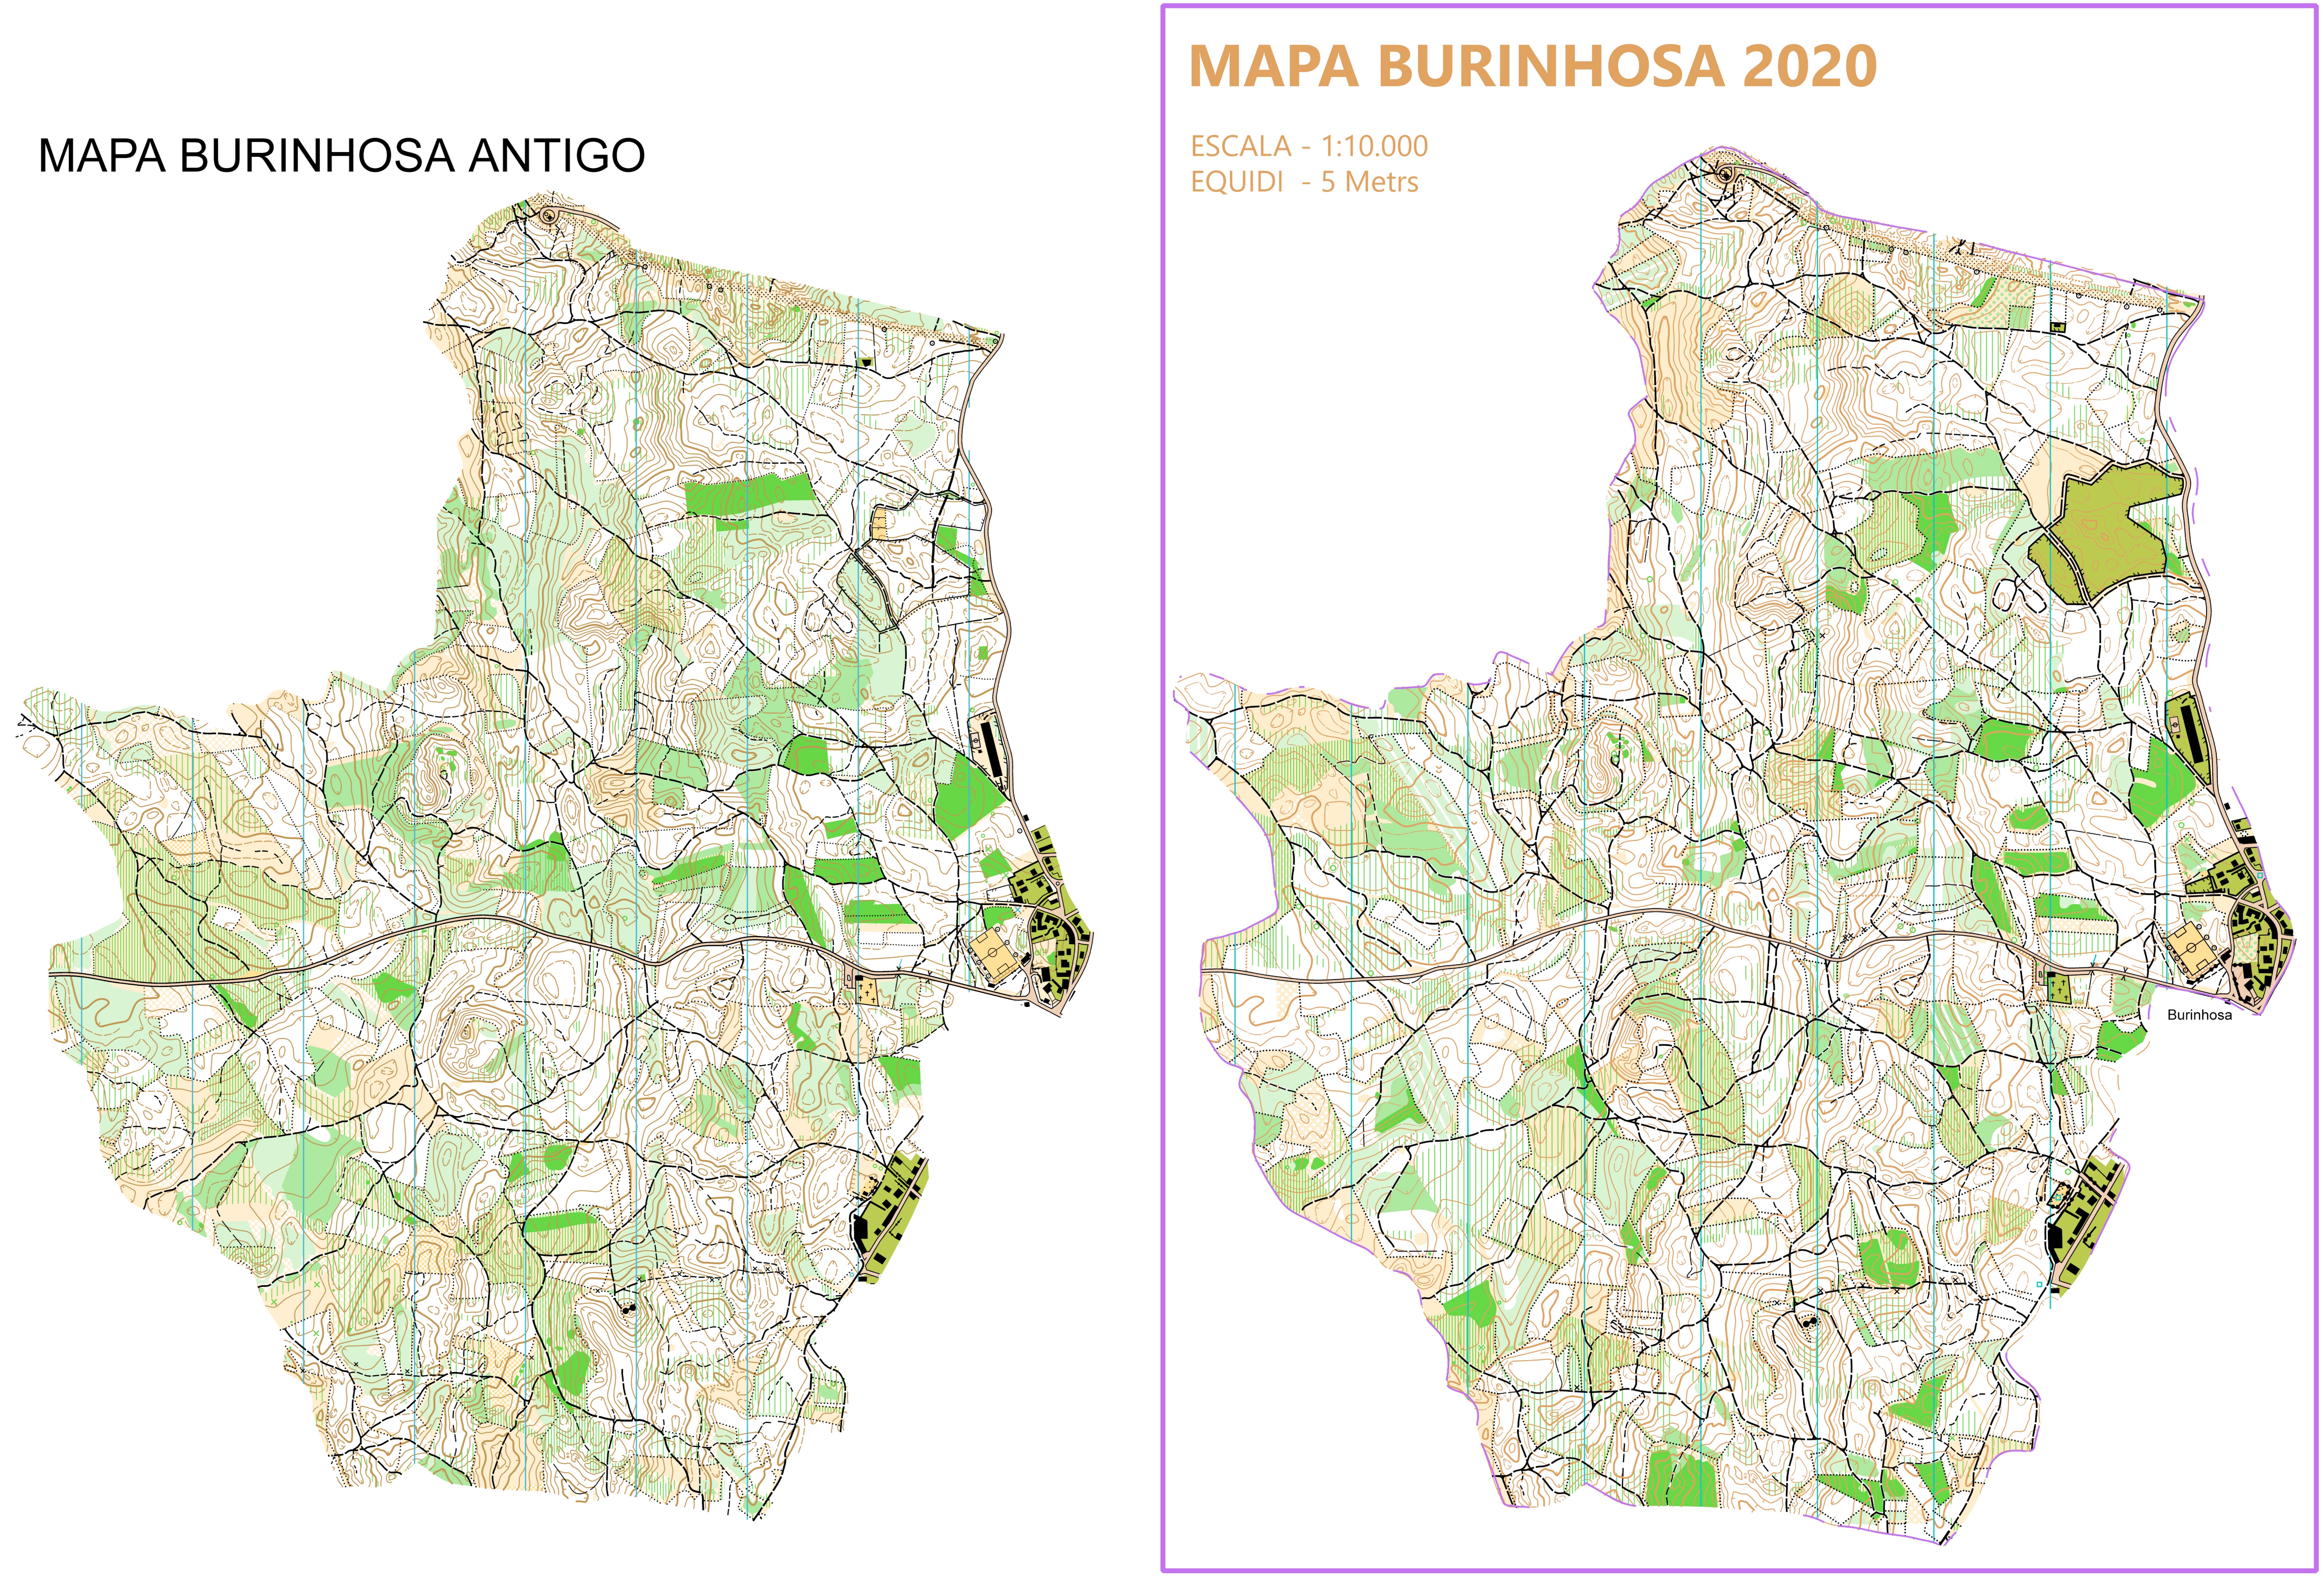 (239) Mapa Burinhosa2020 - Portugal Janeiro2020